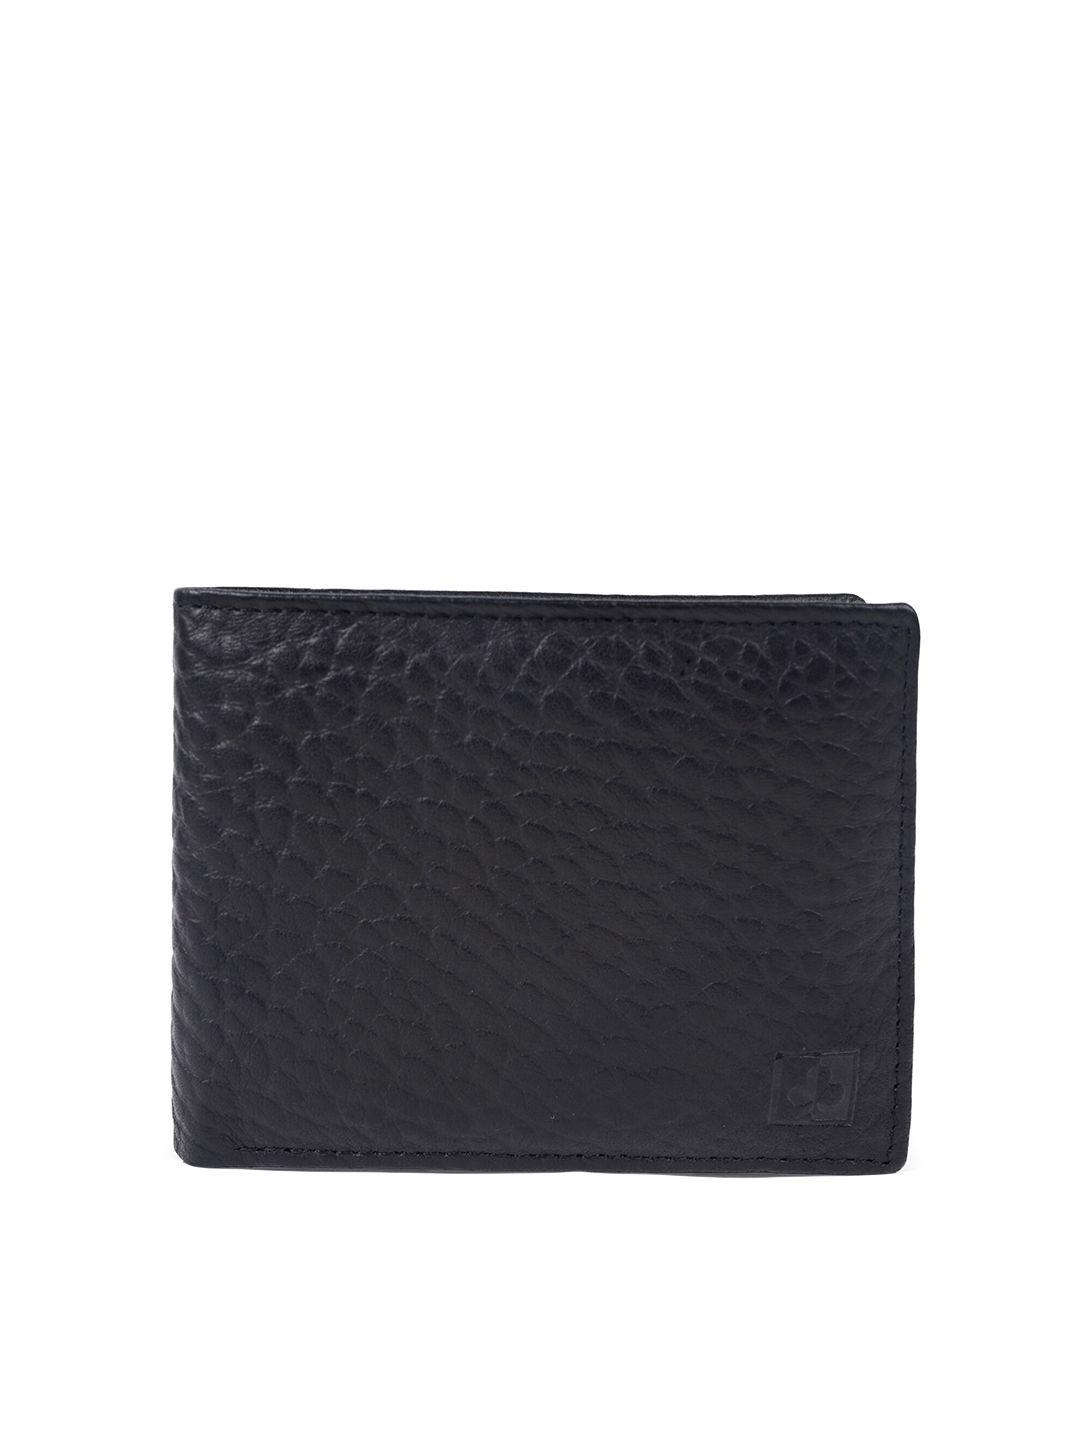 cimoni unisex black leather two fold wallet